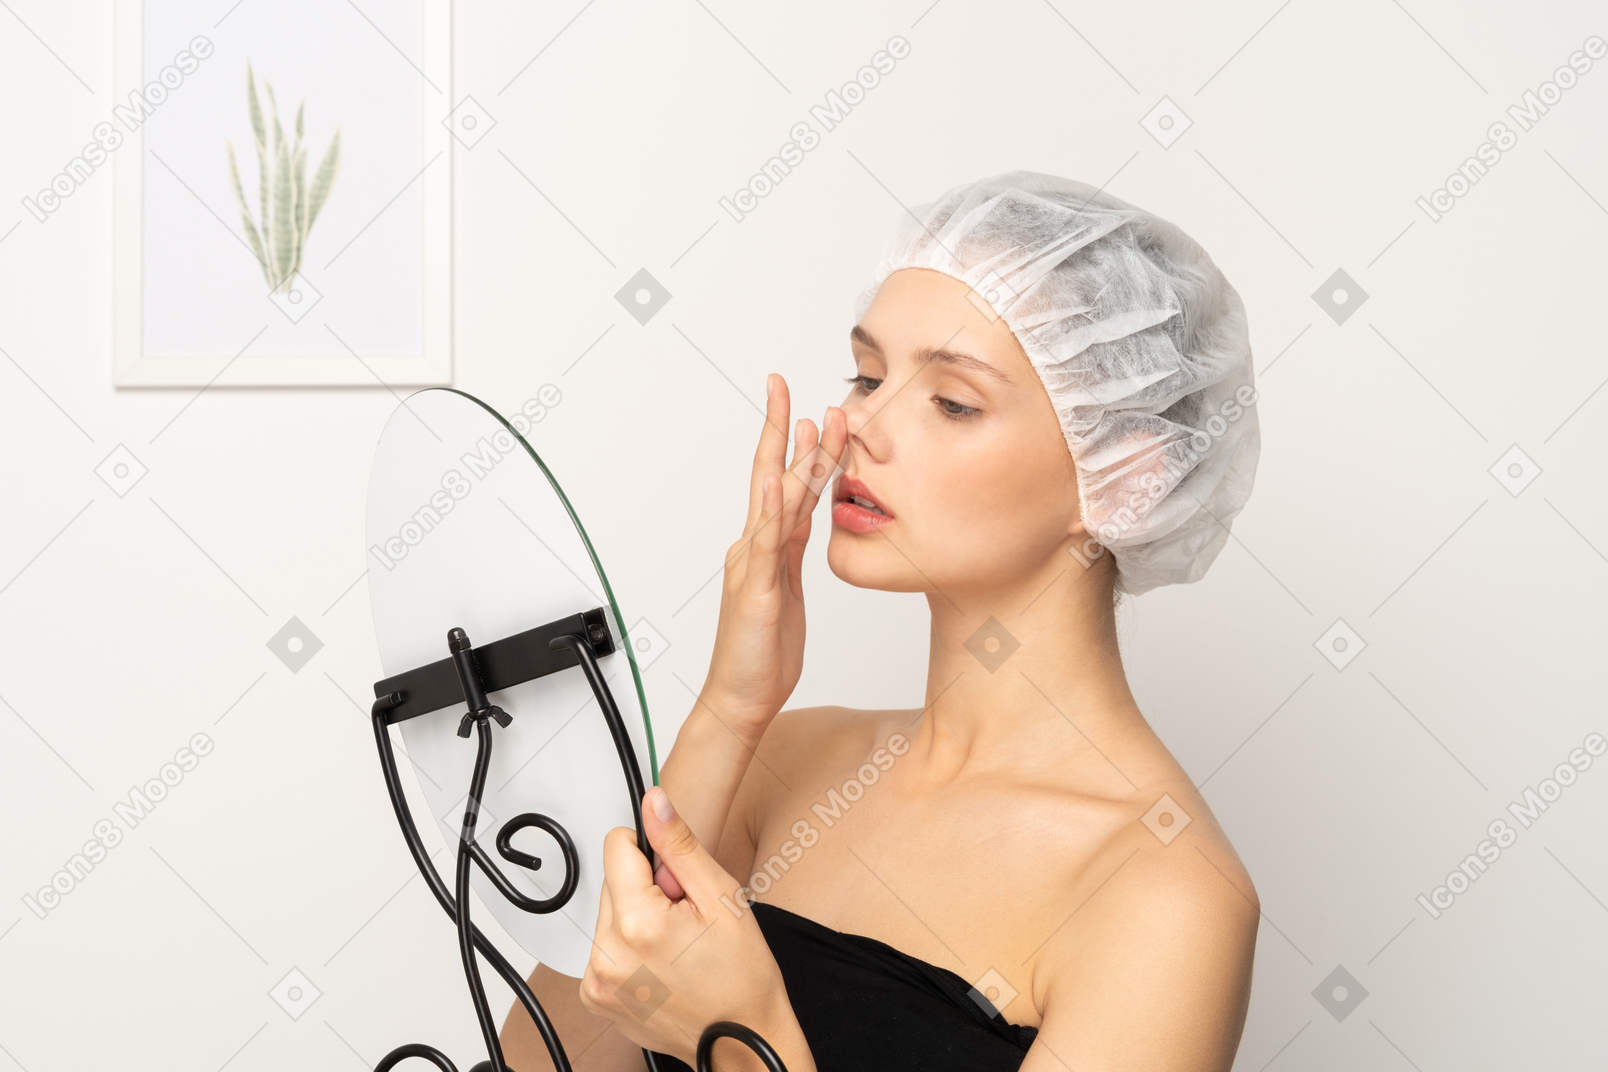 거울을 보면서 코를 들어올리는 의료 모자를 쓴 젊은 여성